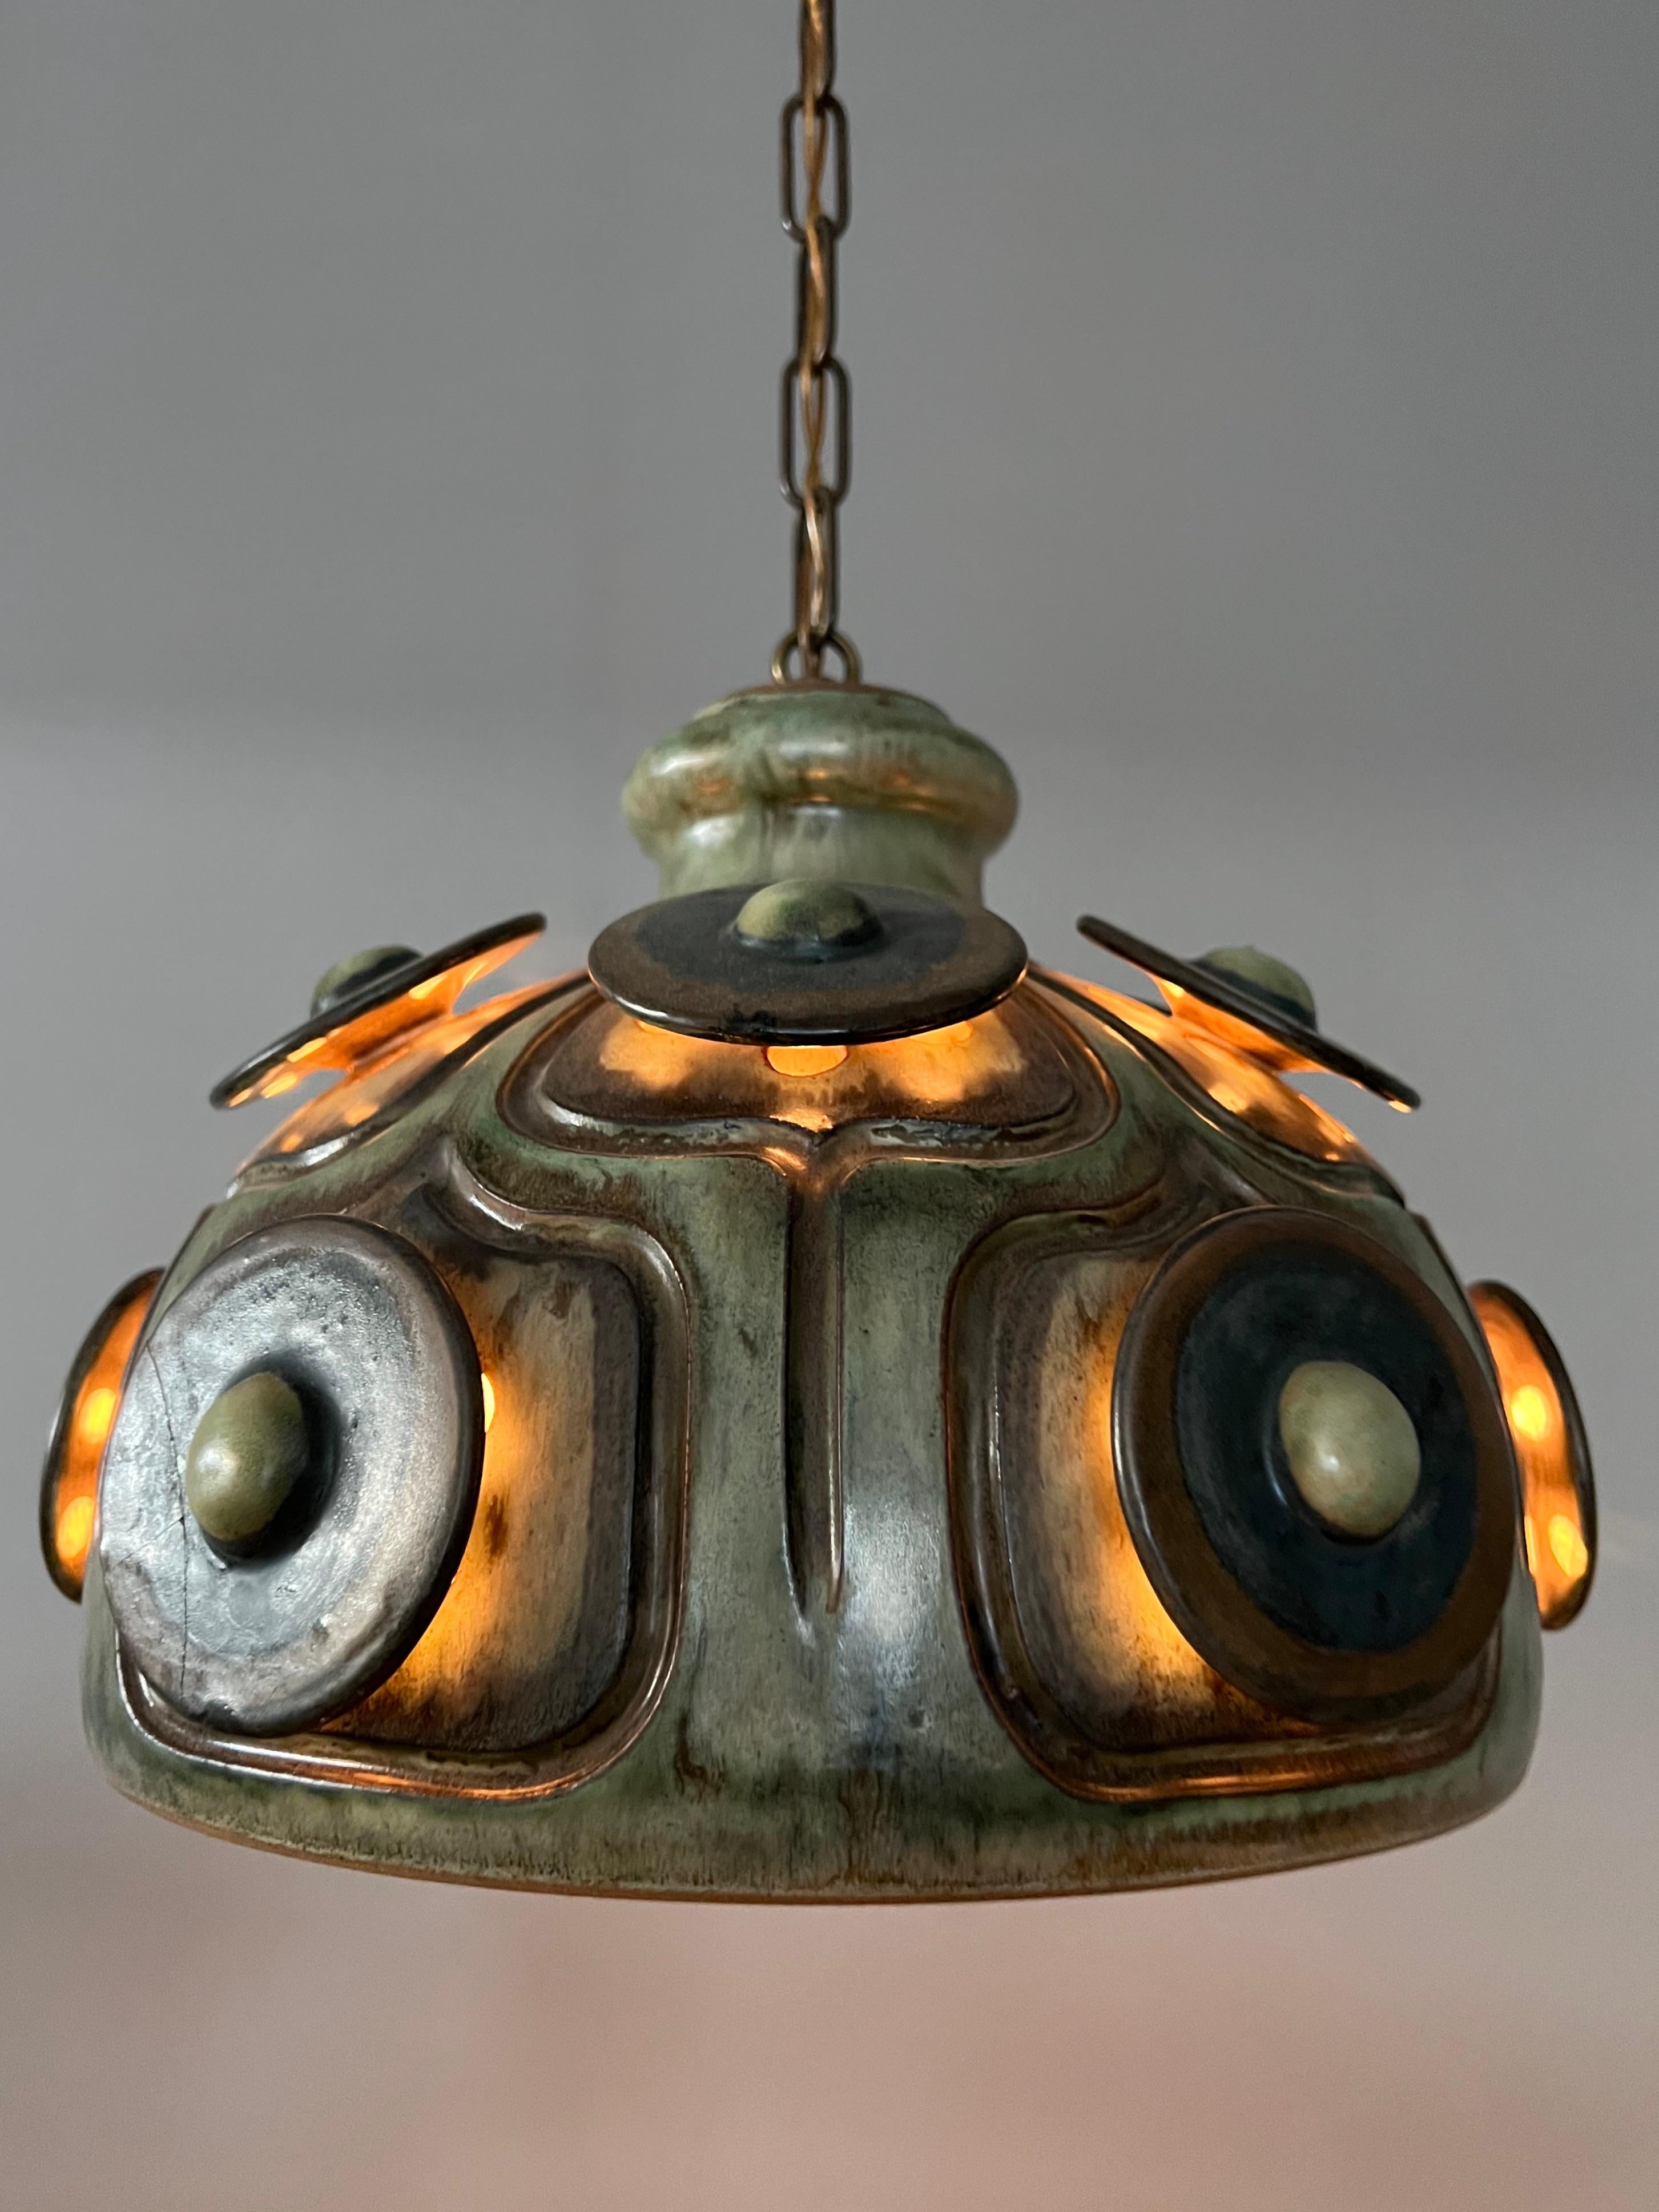 Italian Handmade Danish Ceramic Pendant Light by Jette Hellerøe for Axella, 1970s For Sale